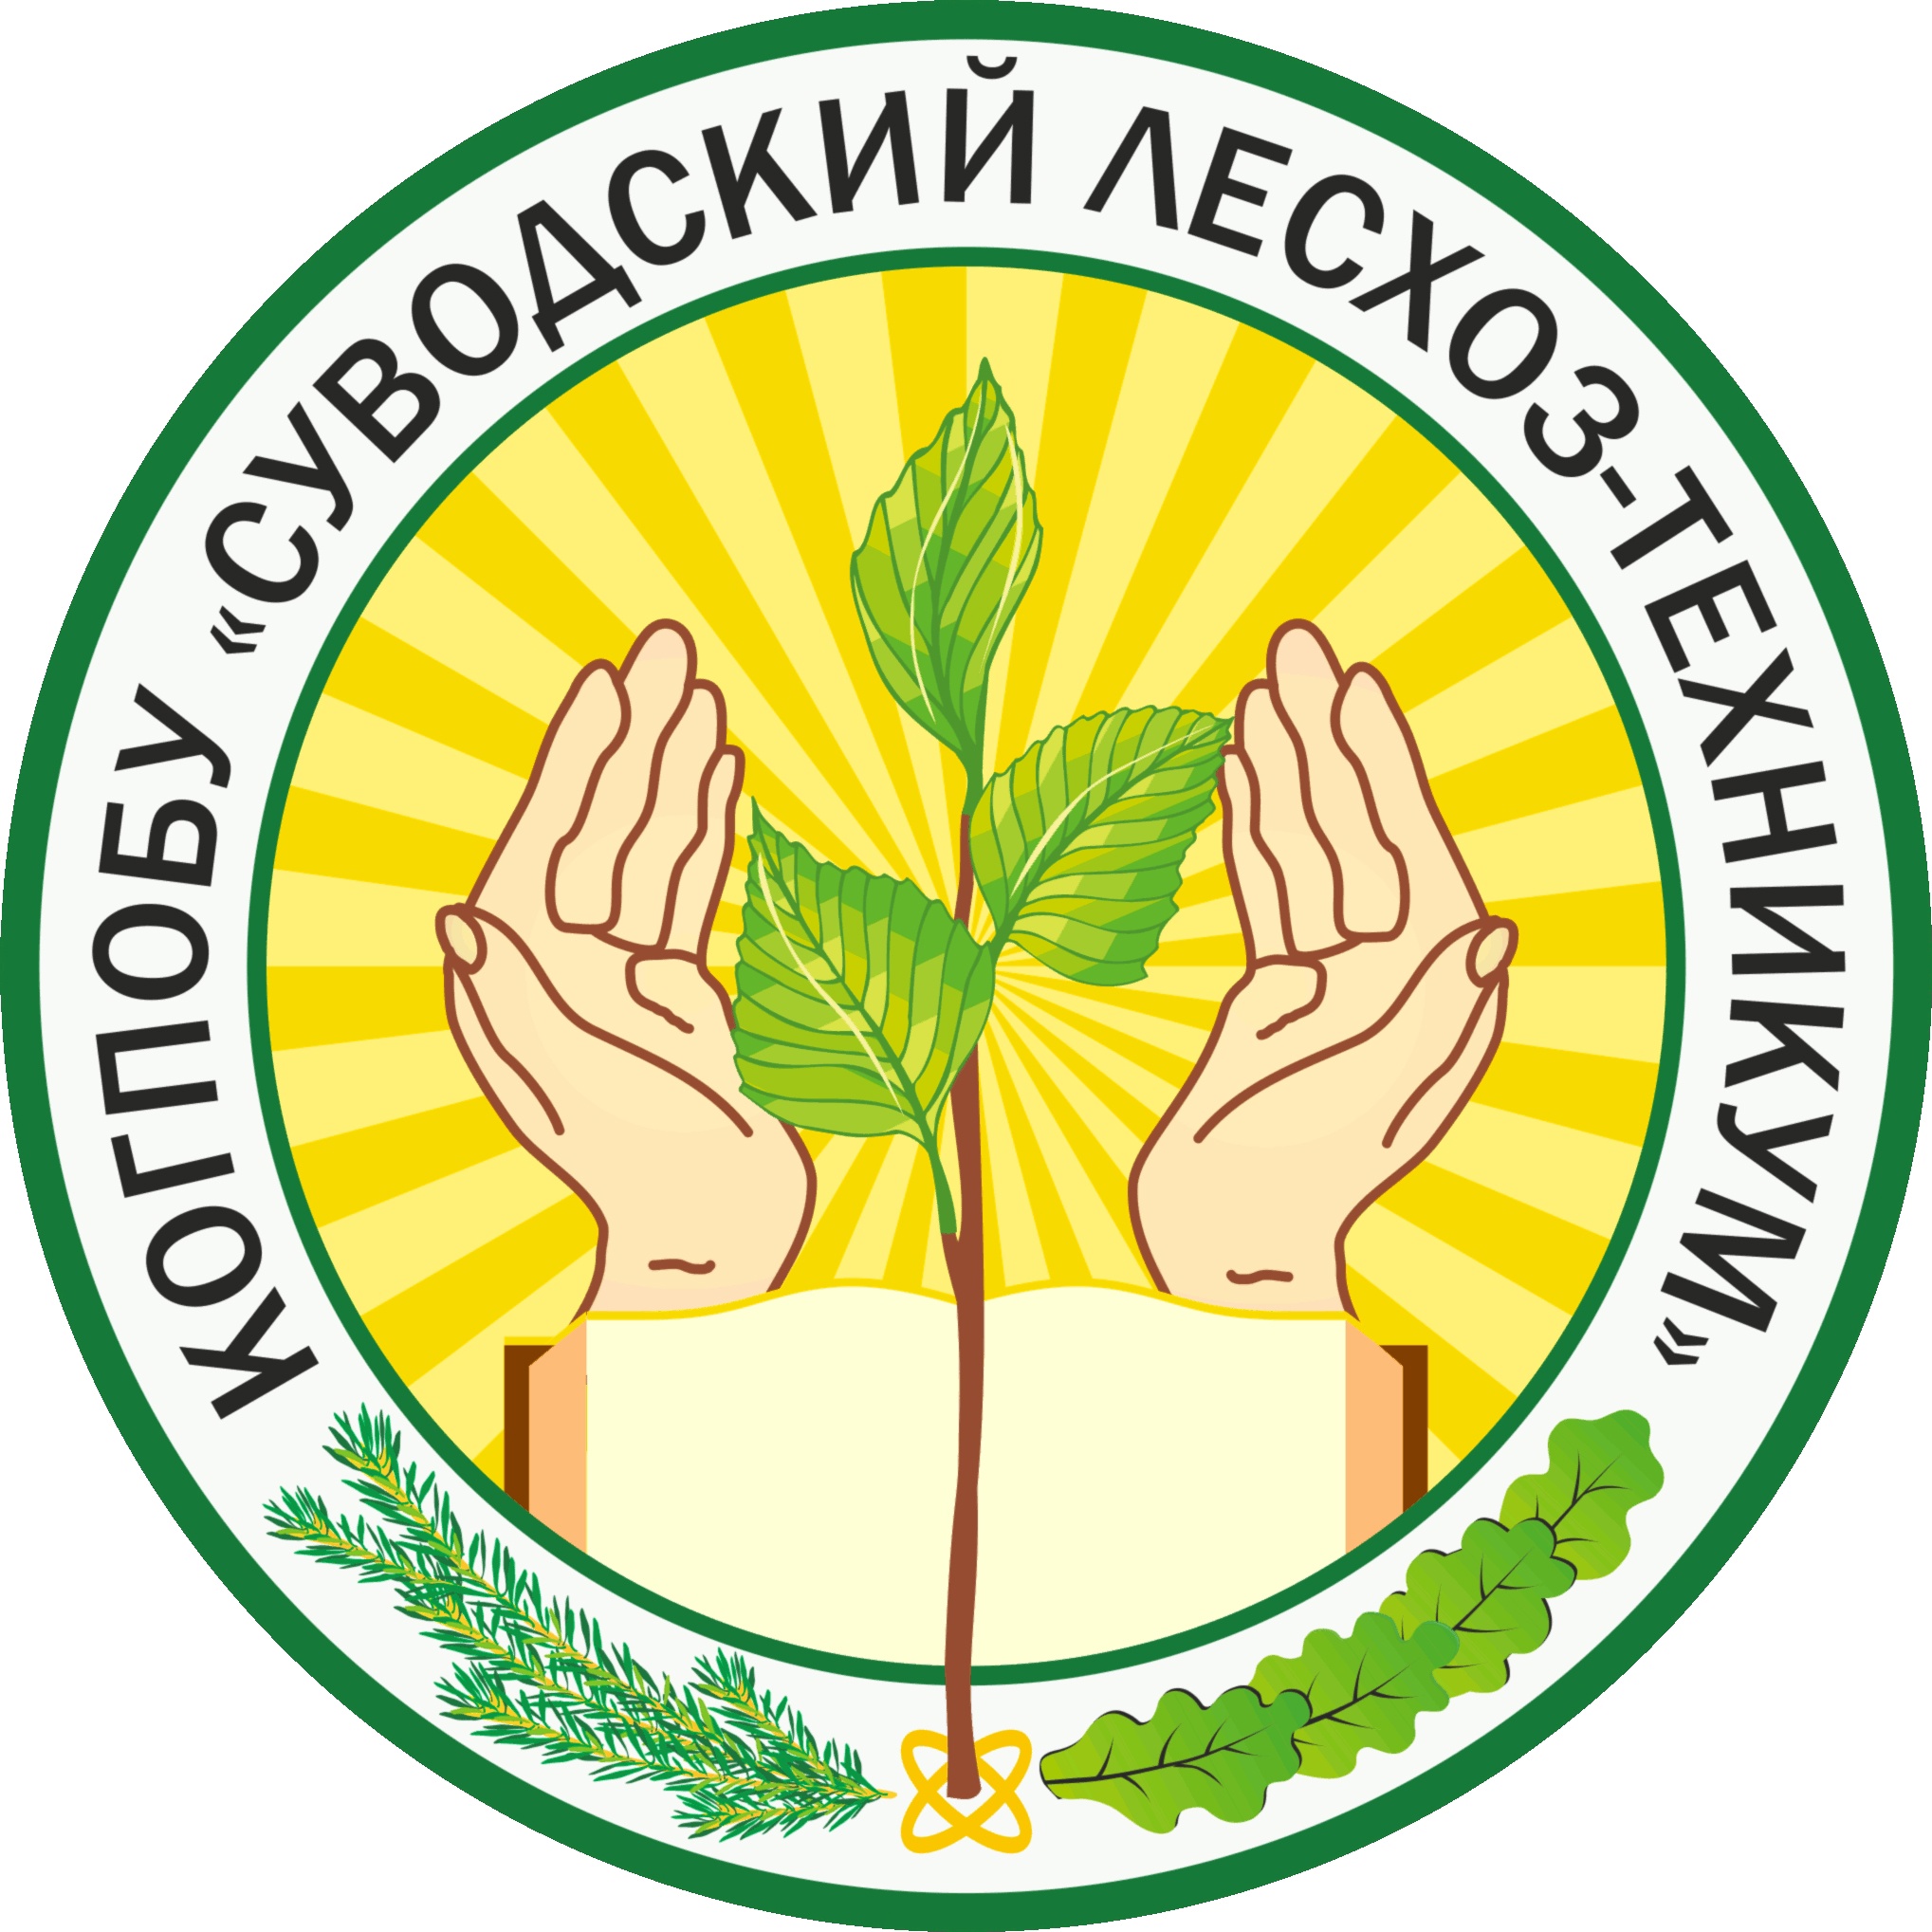 Логотип (Суводский лесхоз-техникум)